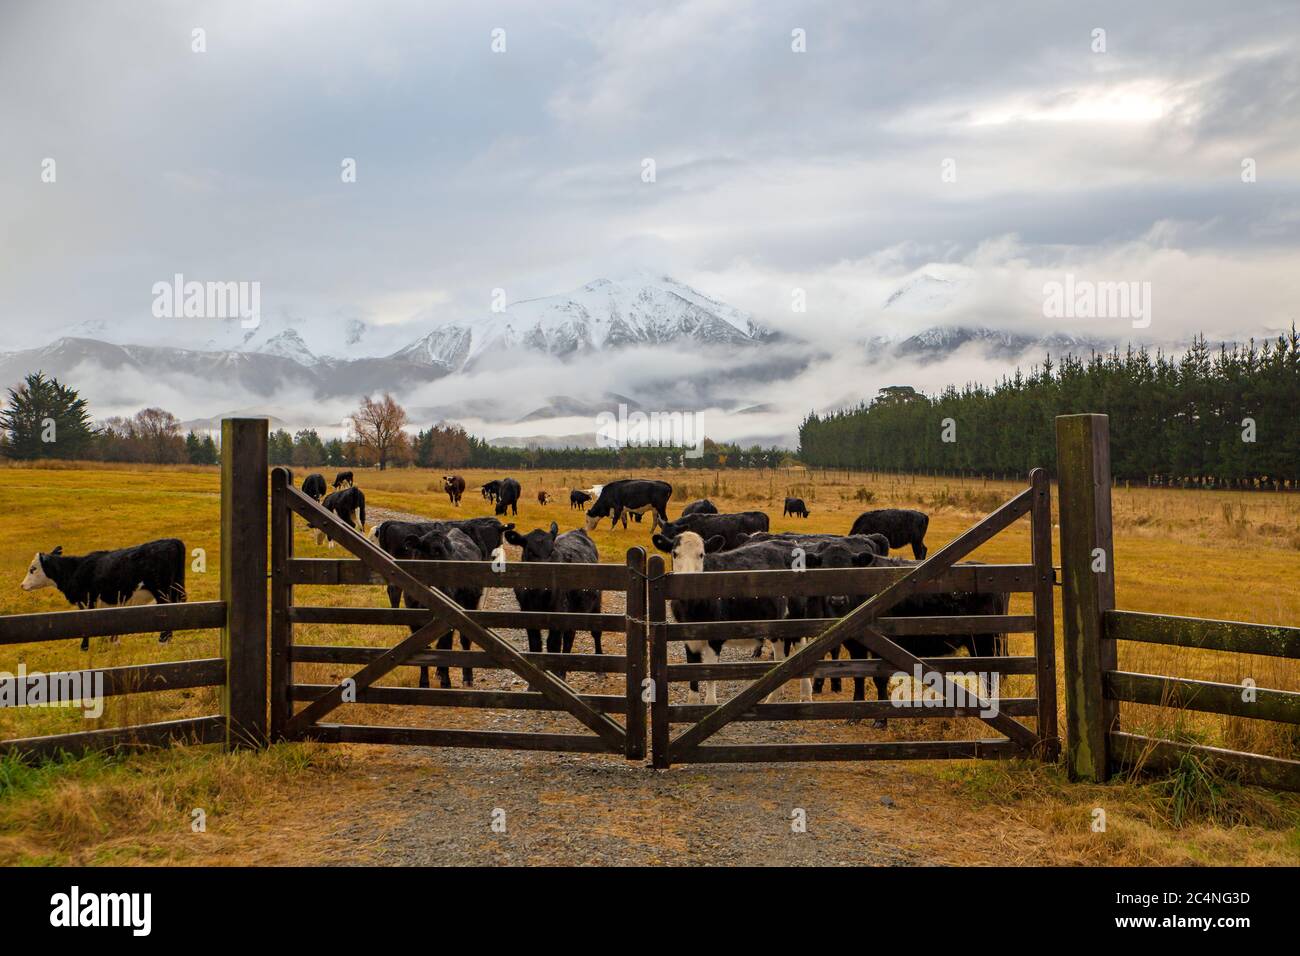 Eine regnerische Winterfarmszene in Neuseeland, mit Rindern hinter einem hölzernen Farmtor und verschneiten Bergen im Hintergrund Stockfoto